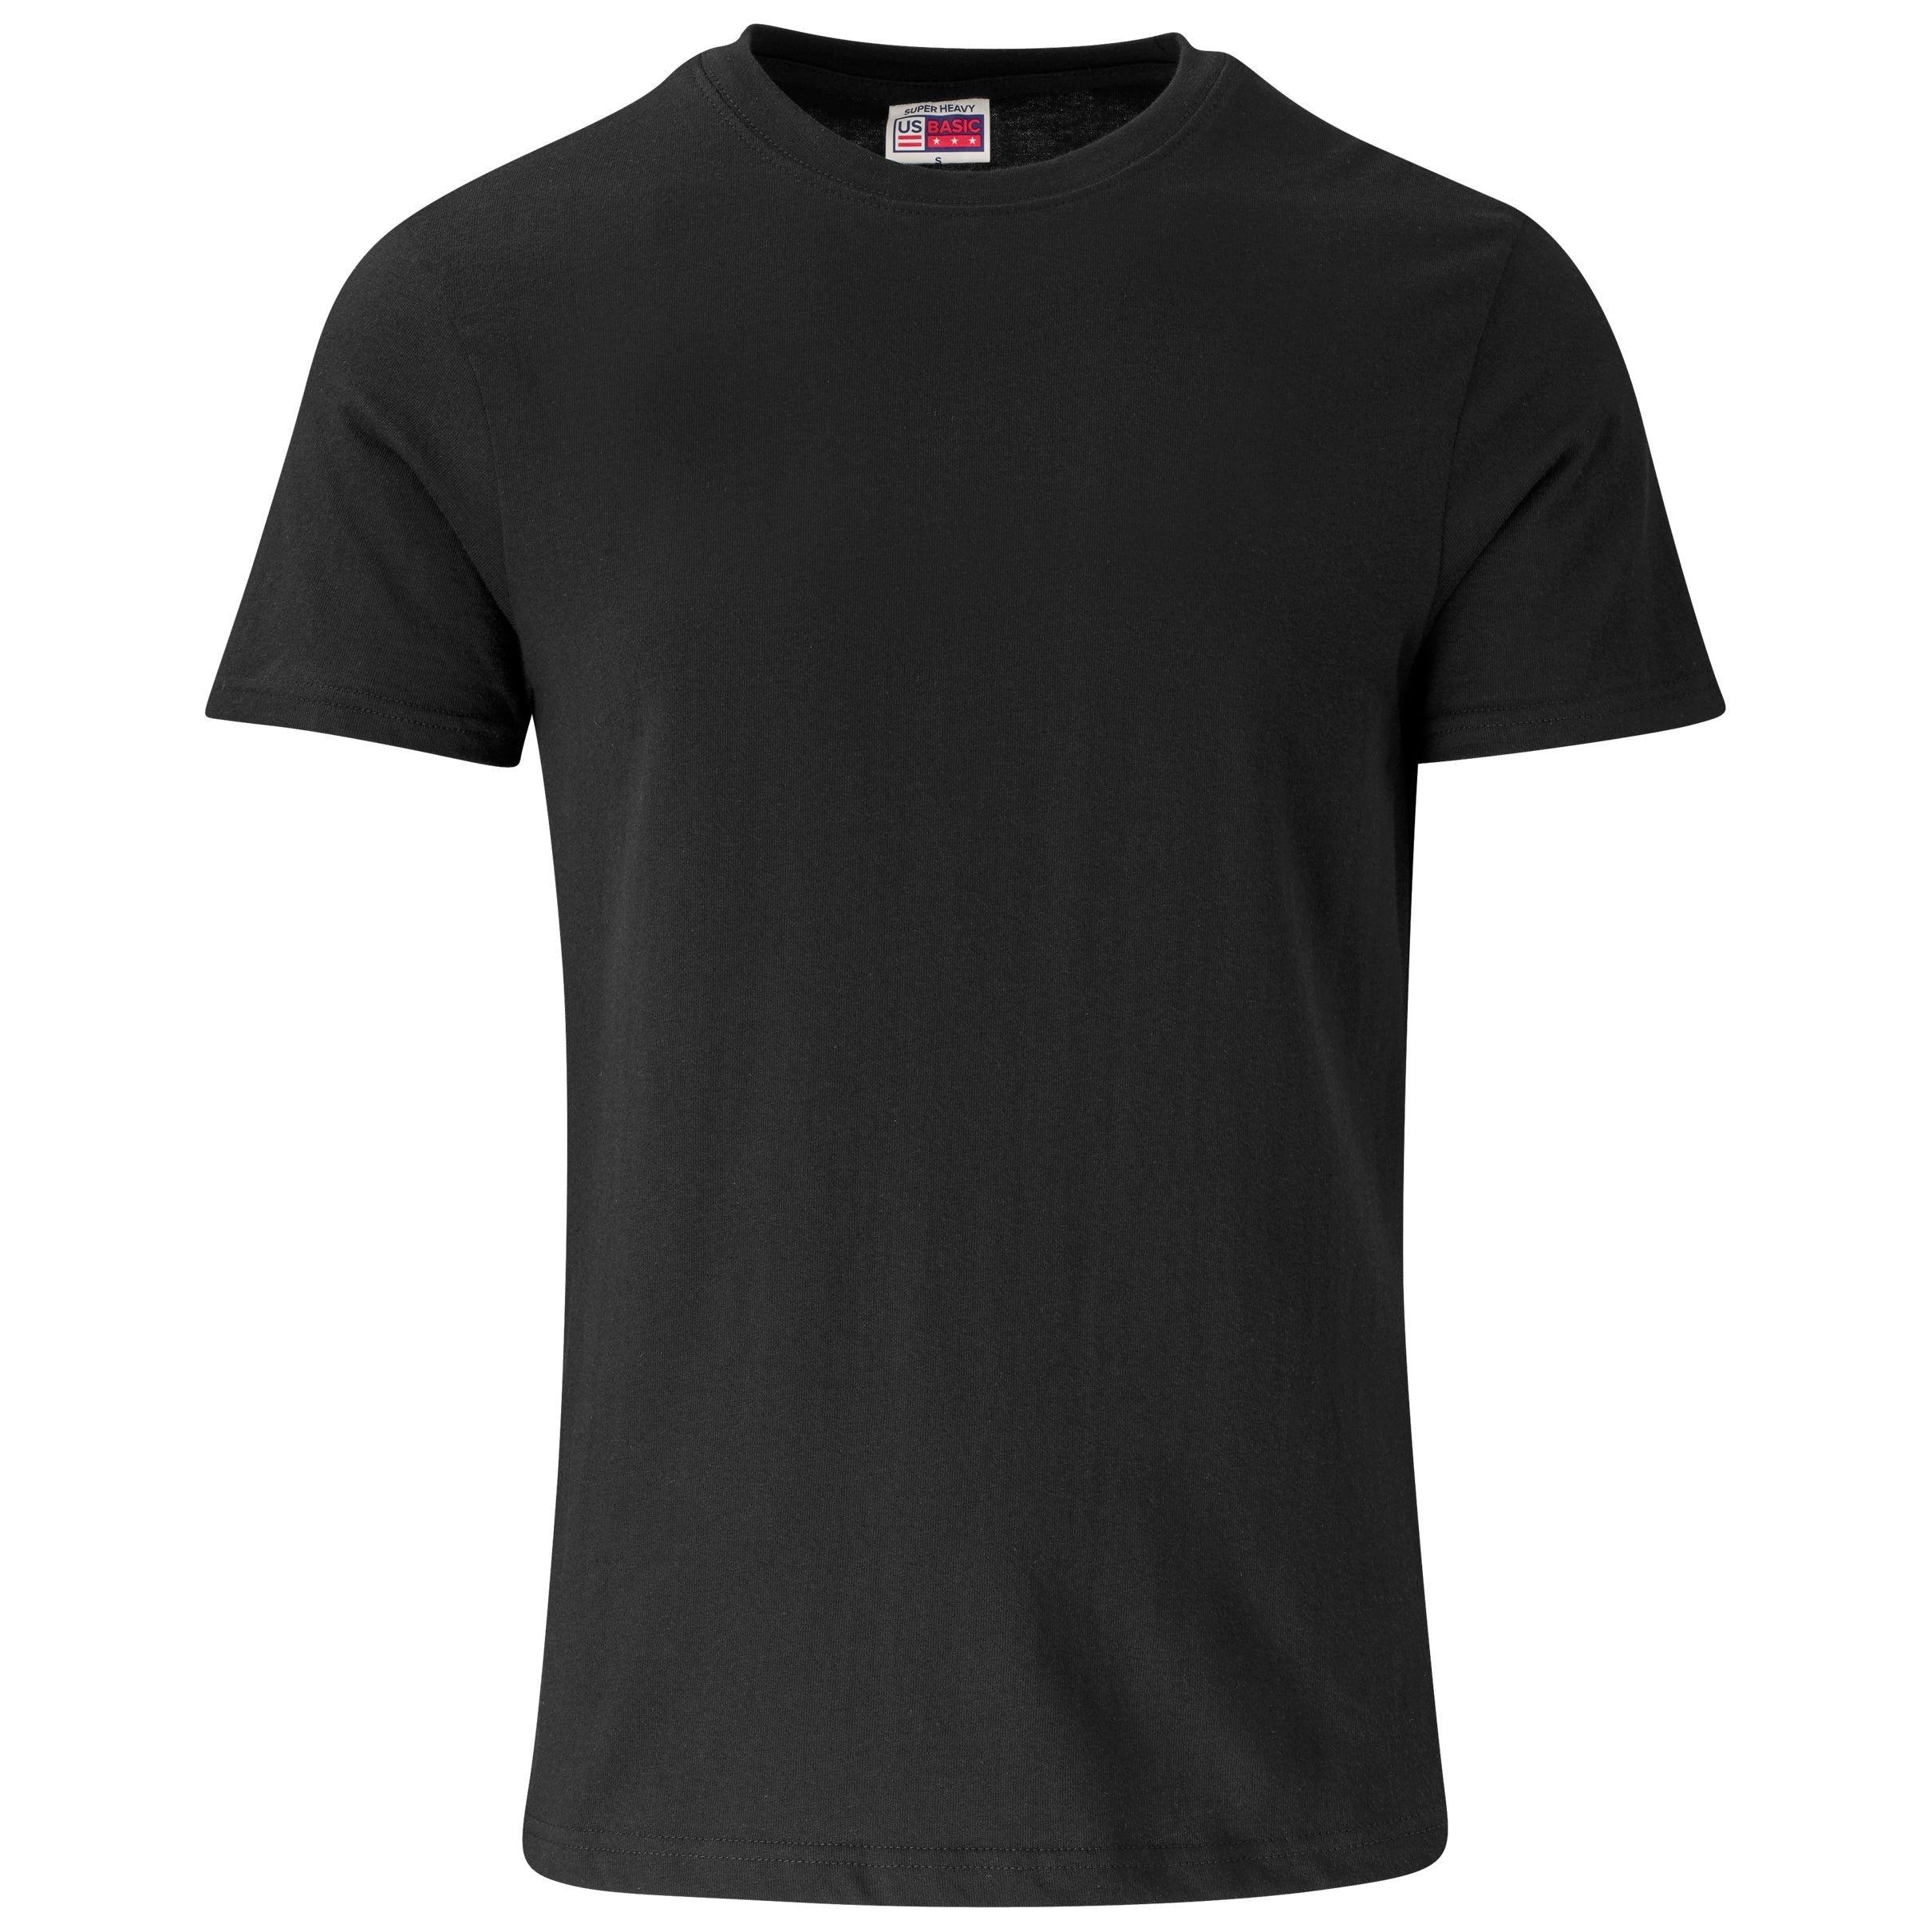 Unisex Super Club 180 T-Shirt-L-Black-BL